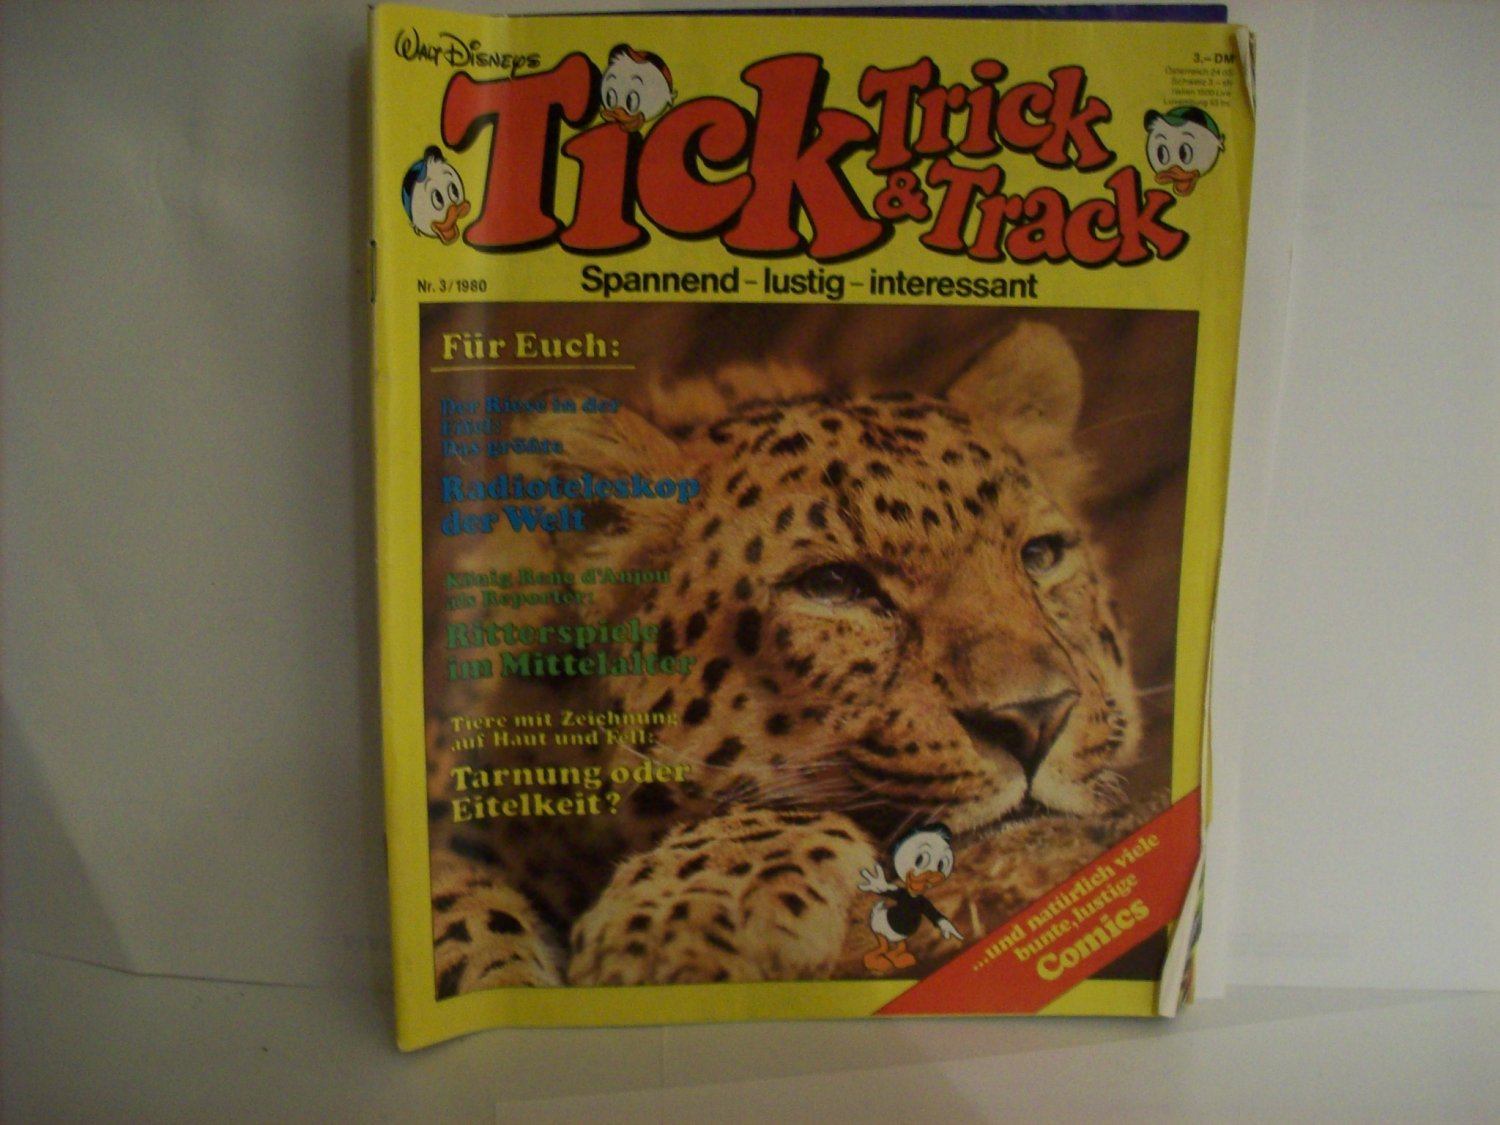 Tick Trick Track Nr Walt Disneys Buch Gebraucht Kaufen A02l7zcn01zzp